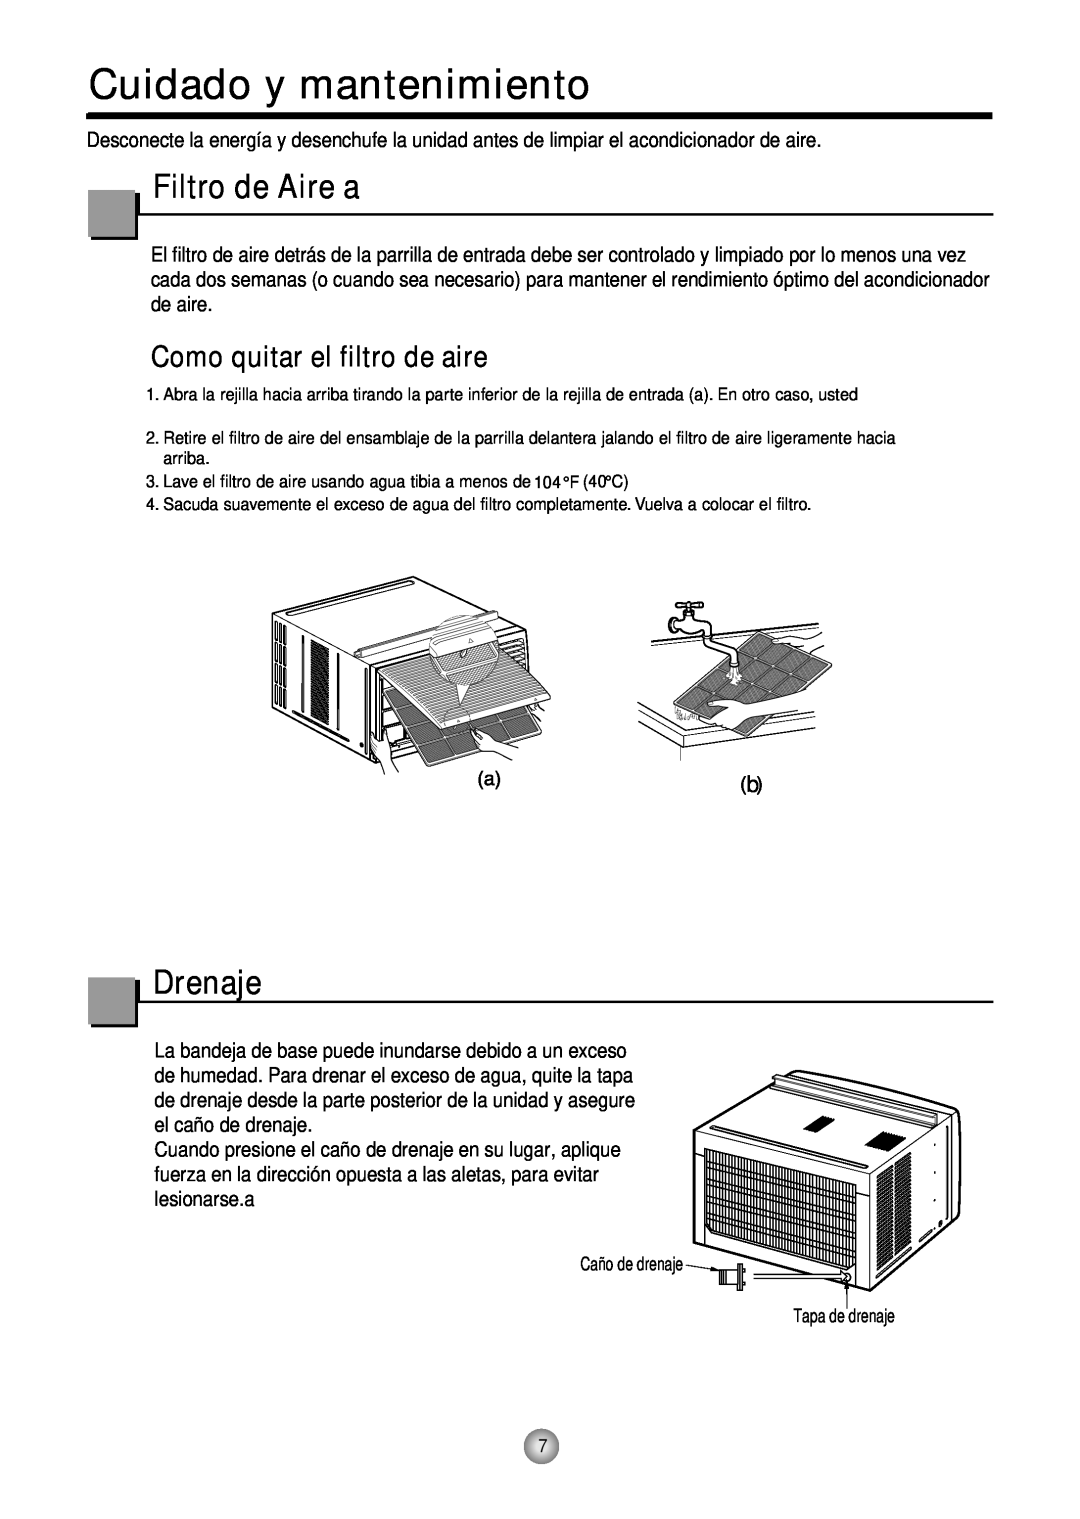 Friedrich CP10, CP12 manual Cuidado y mantenimiento, Filtro de Aire a, Drenaje, Como quitar el filtro de aire 